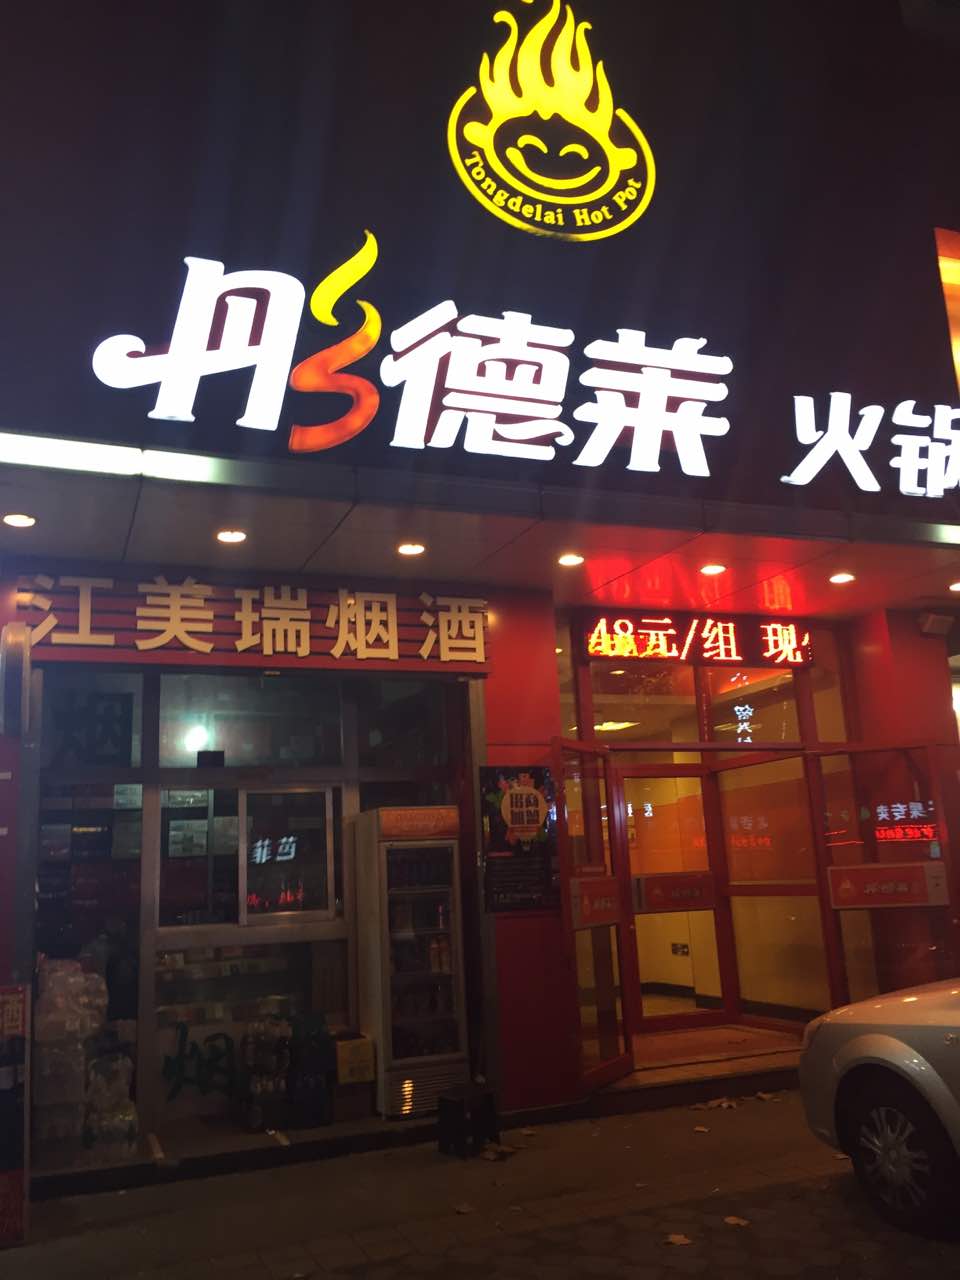 2022彤德莱火锅(江西路店)美食餐厅,这家店味道非常好,一级棒,